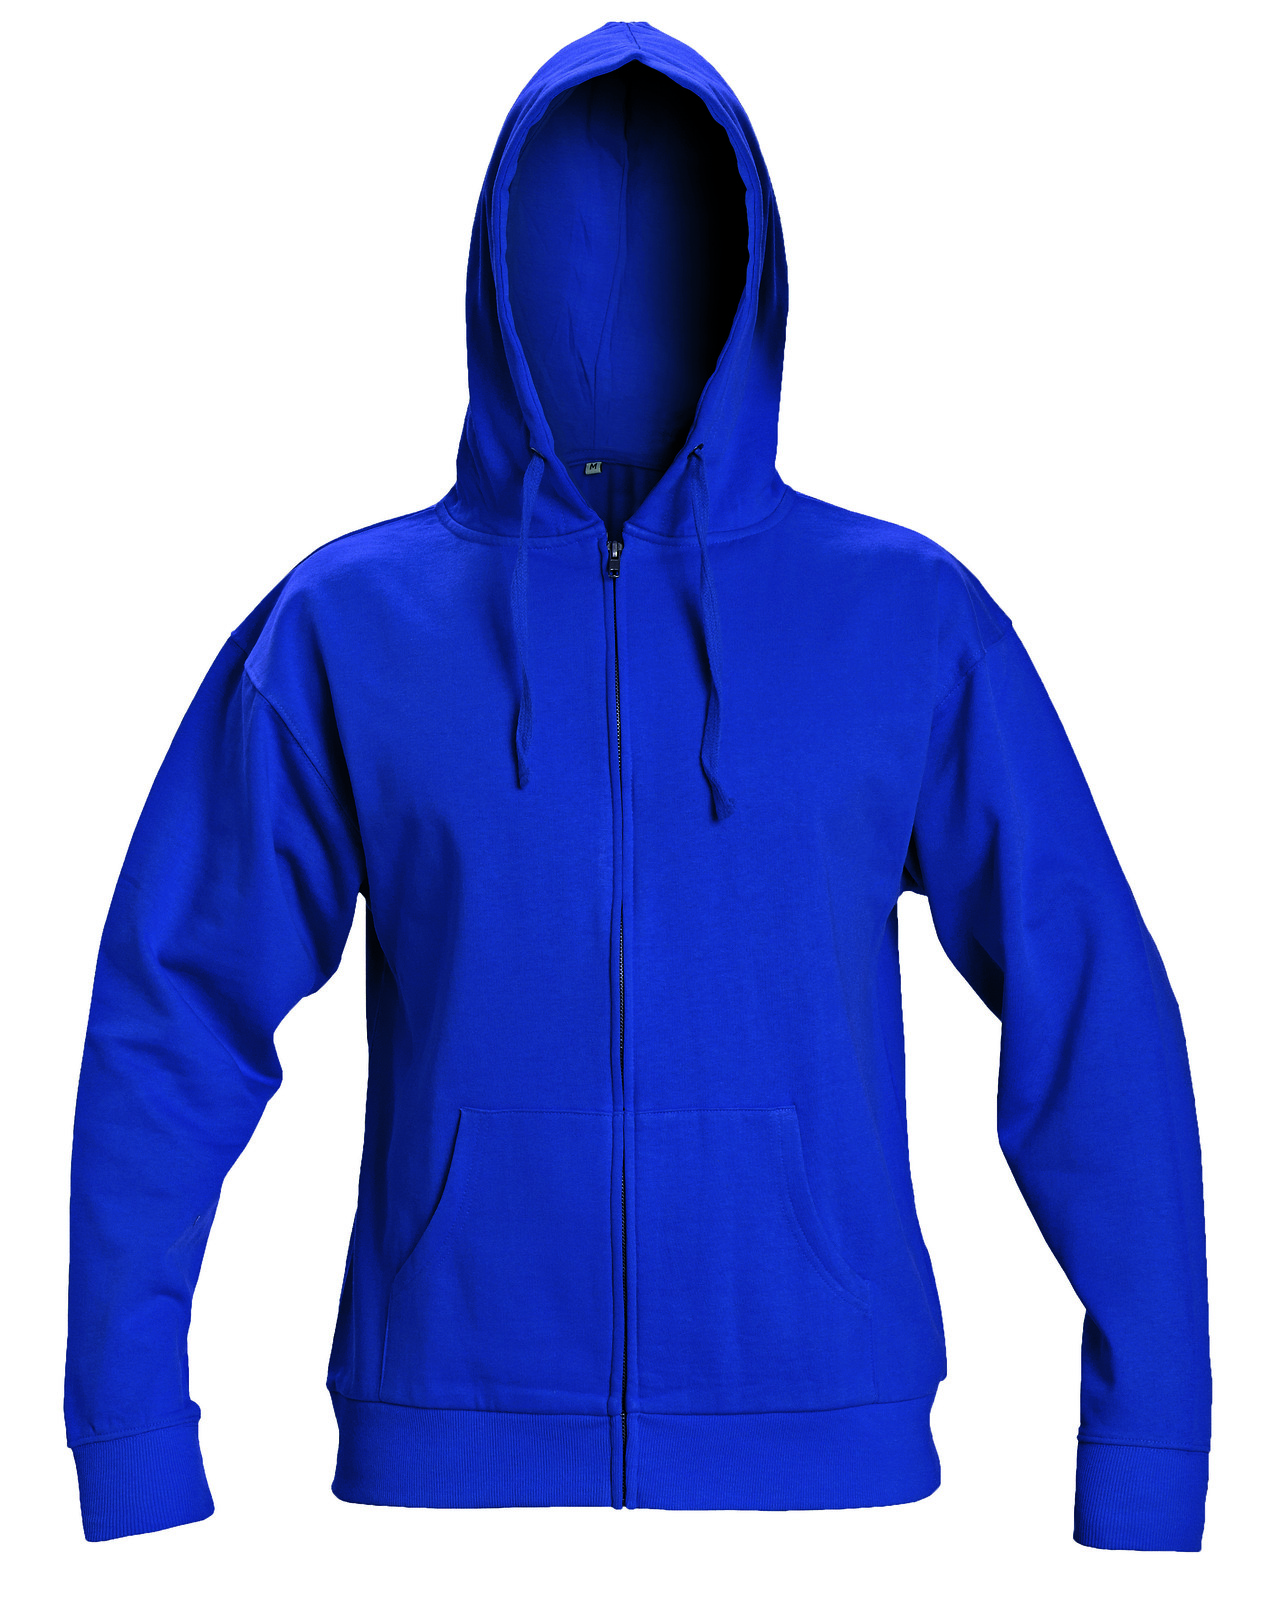 Mikina s kapucňou Nagar - veľkosť: XL, farba: modrá